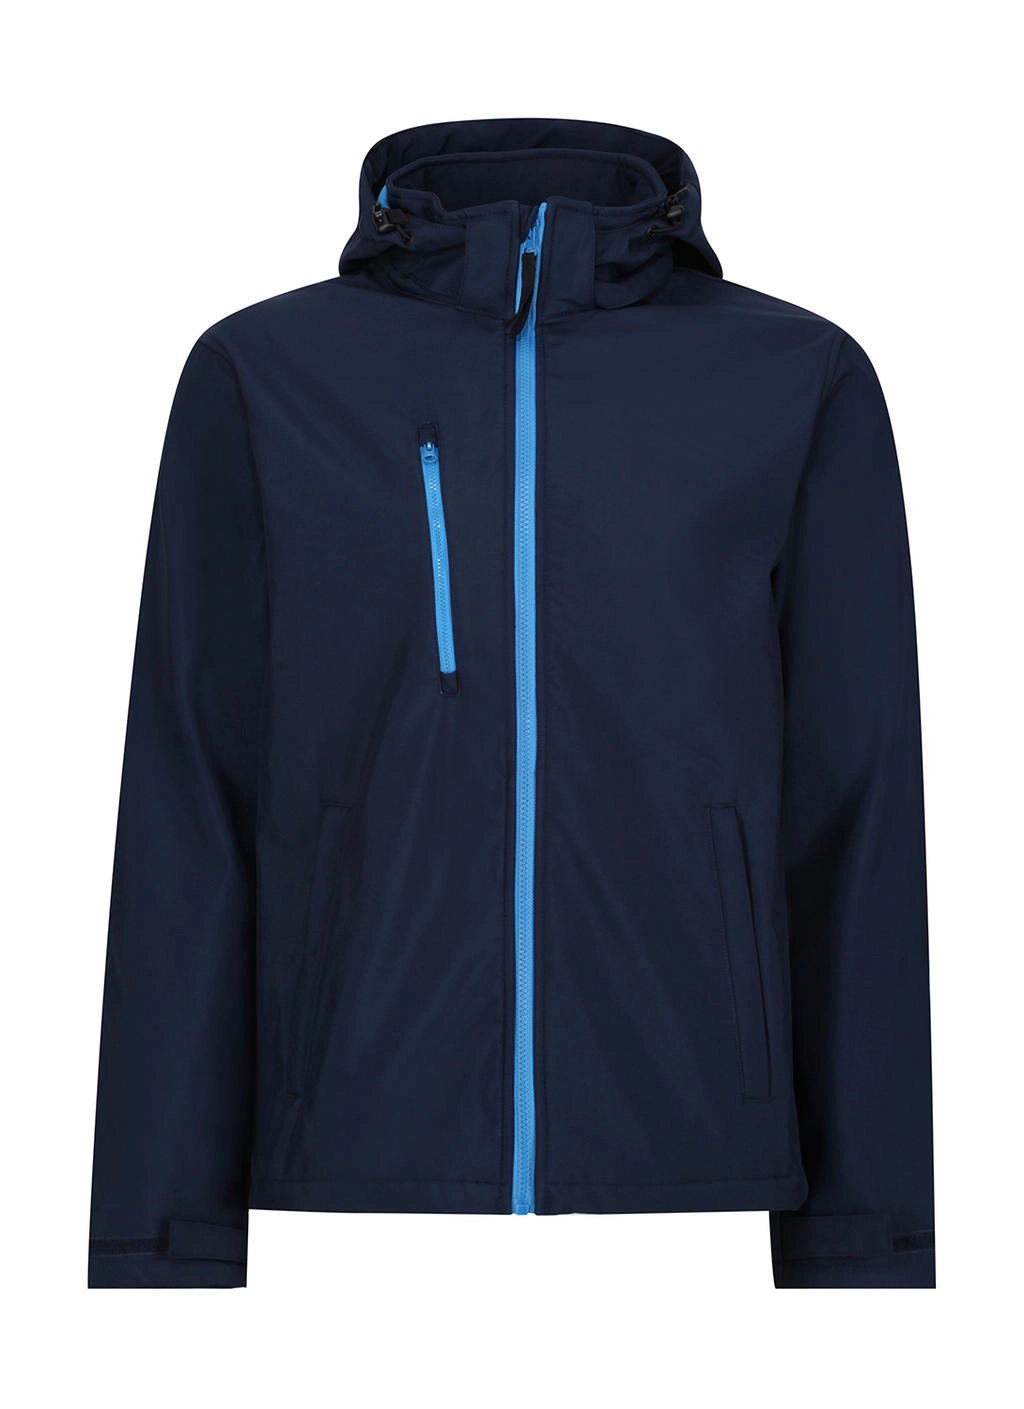 Venturer 3-Layer Hooded Softshell Jacket zum Besticken und Bedrucken in der Farbe Navy/French Blue mit Ihren Logo, Schriftzug oder Motiv.